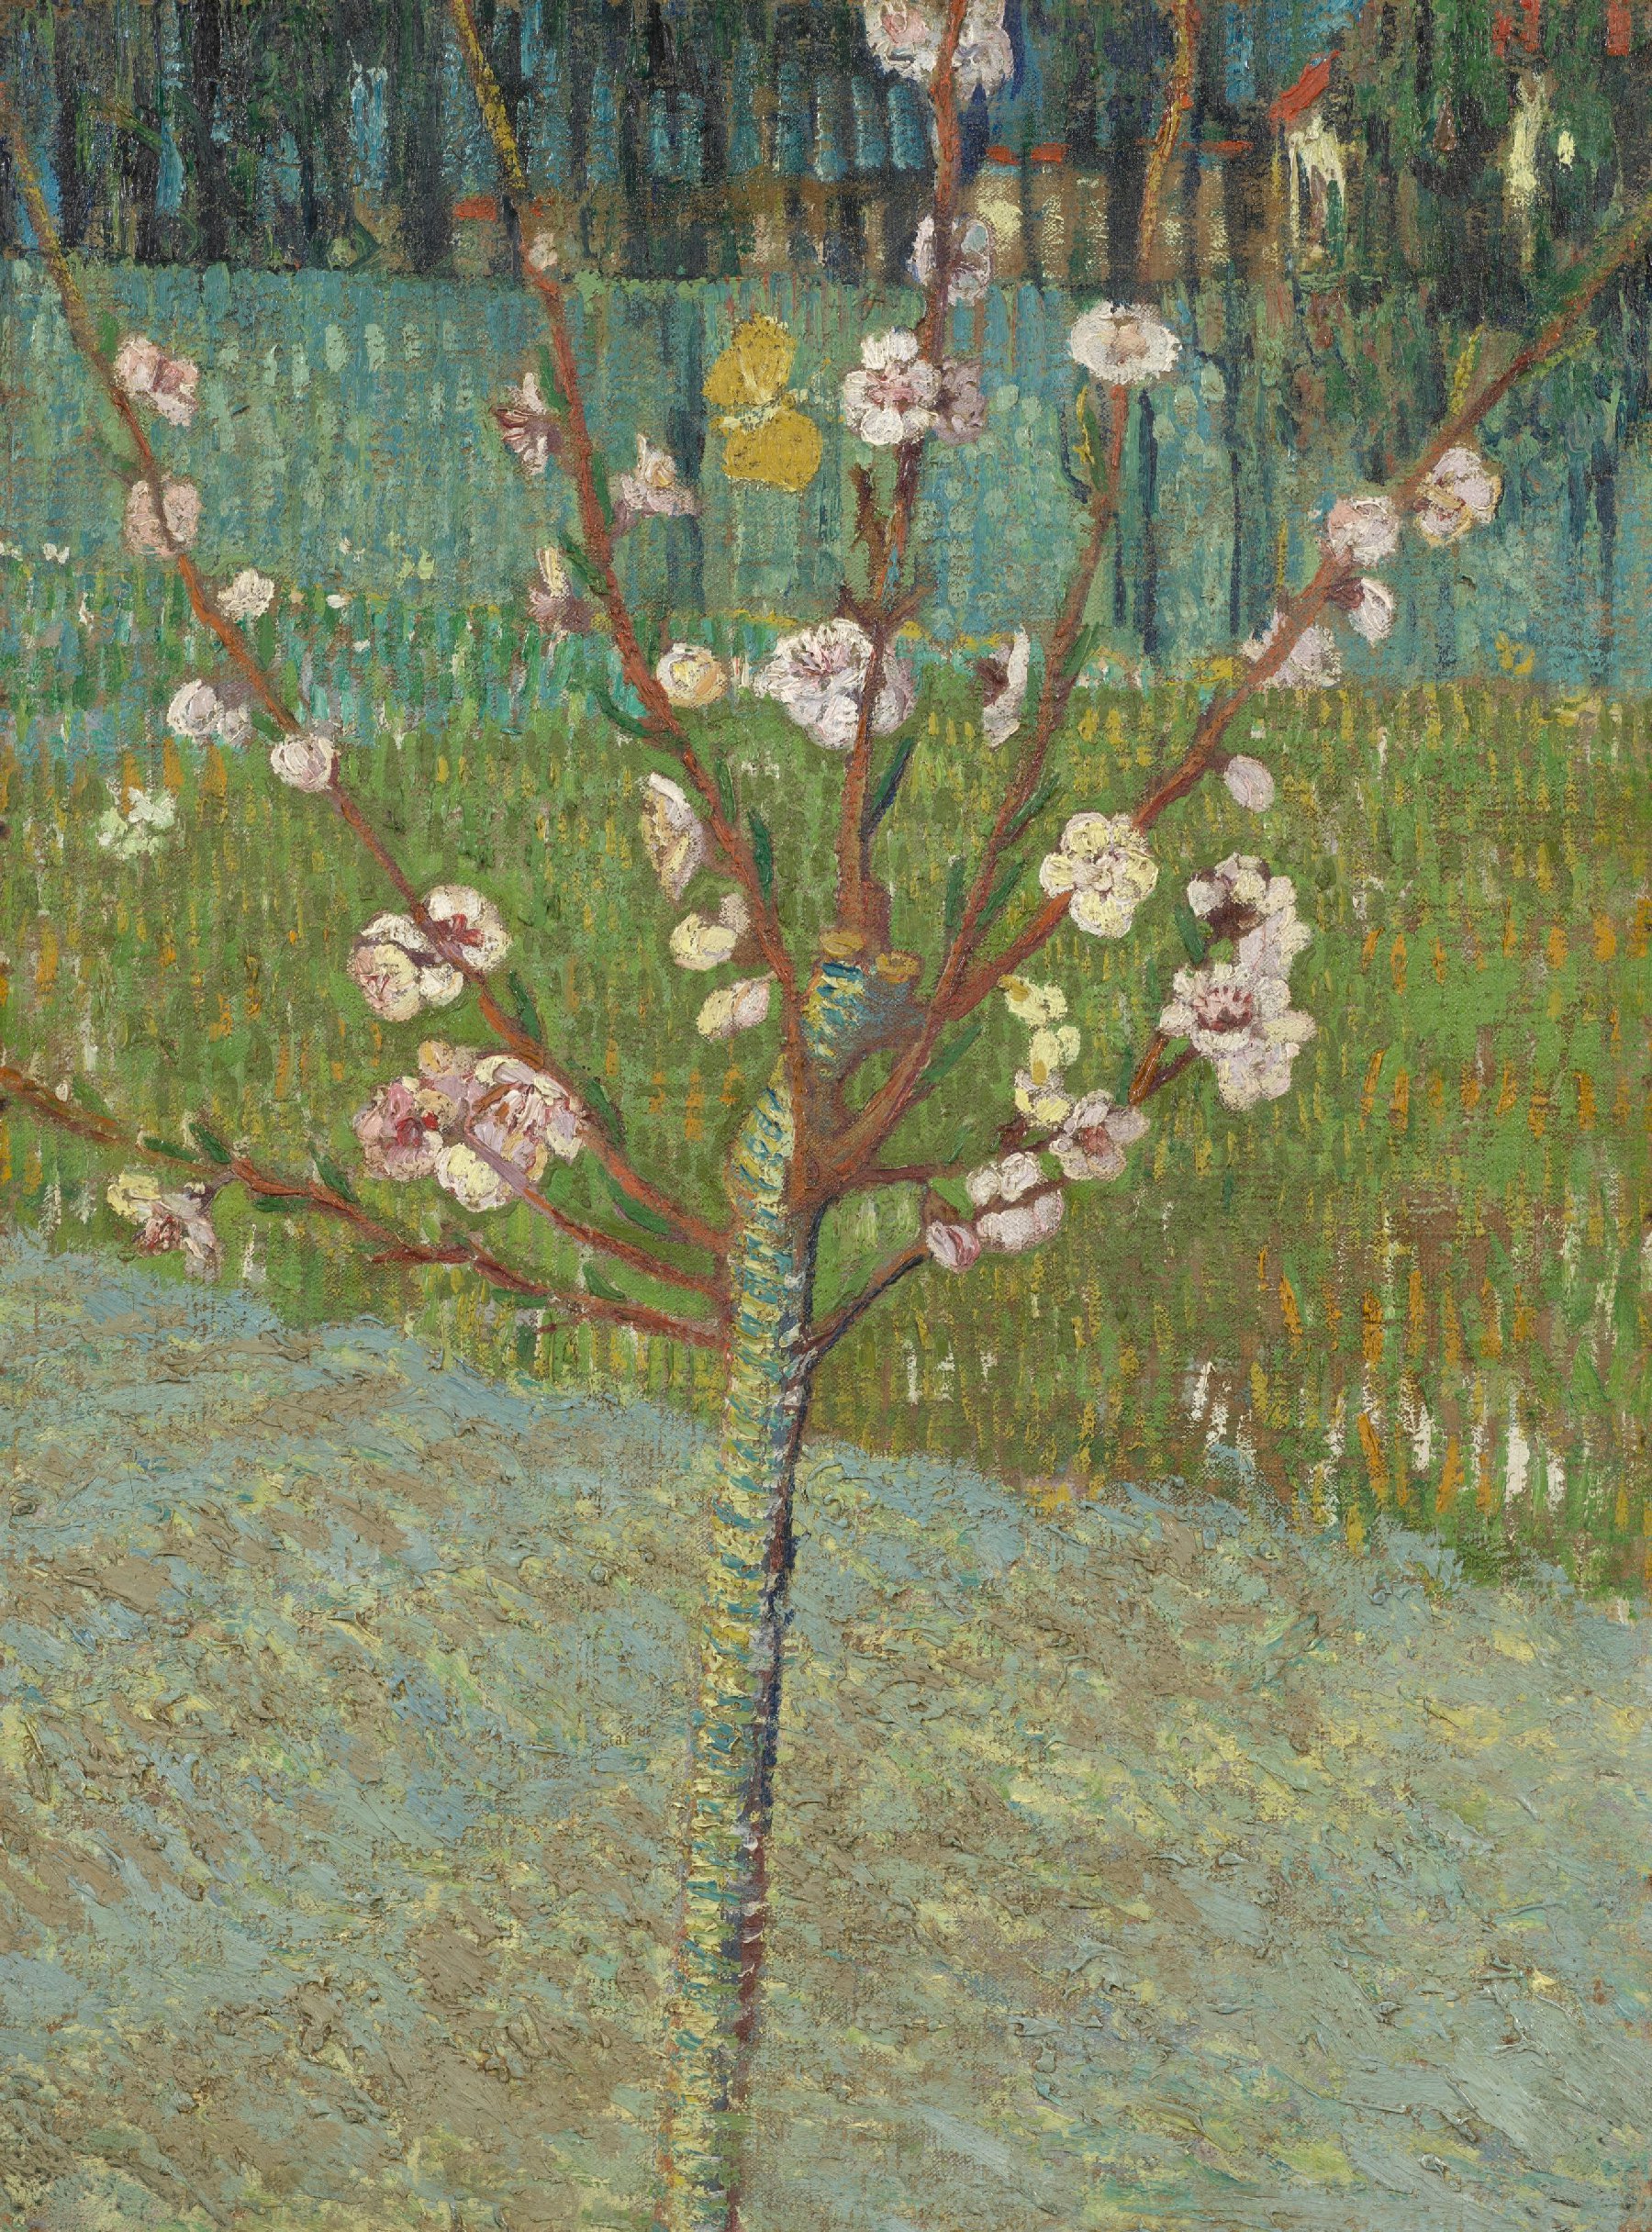 Bloeiende perzikboom Vincent van Gogh (1853 - 1890), Arles, april 1888